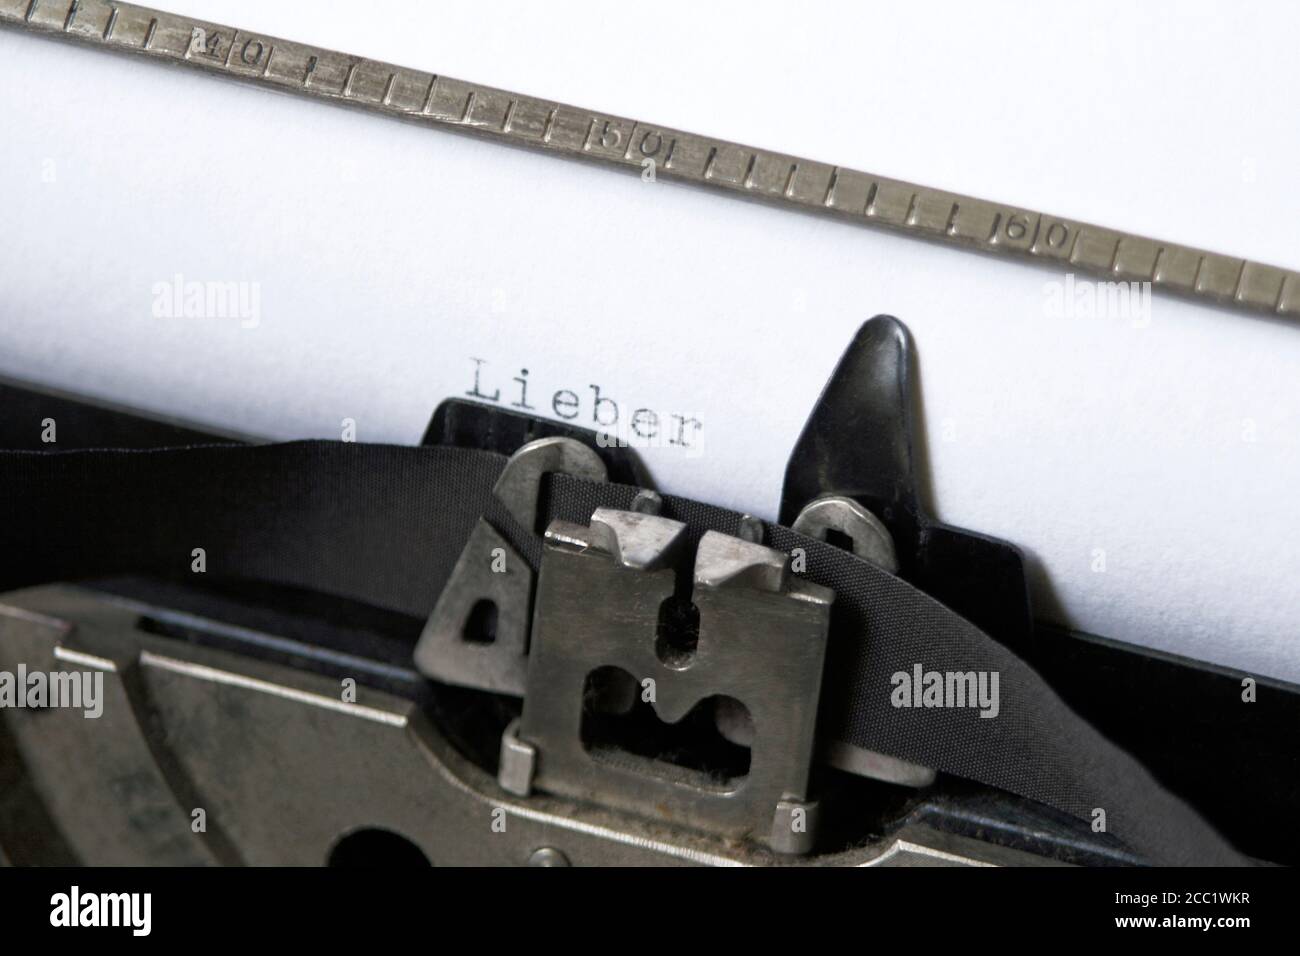 'Lieber' dactylographiées sur du papier dans la machine à écrire, close-up Banque D'Images